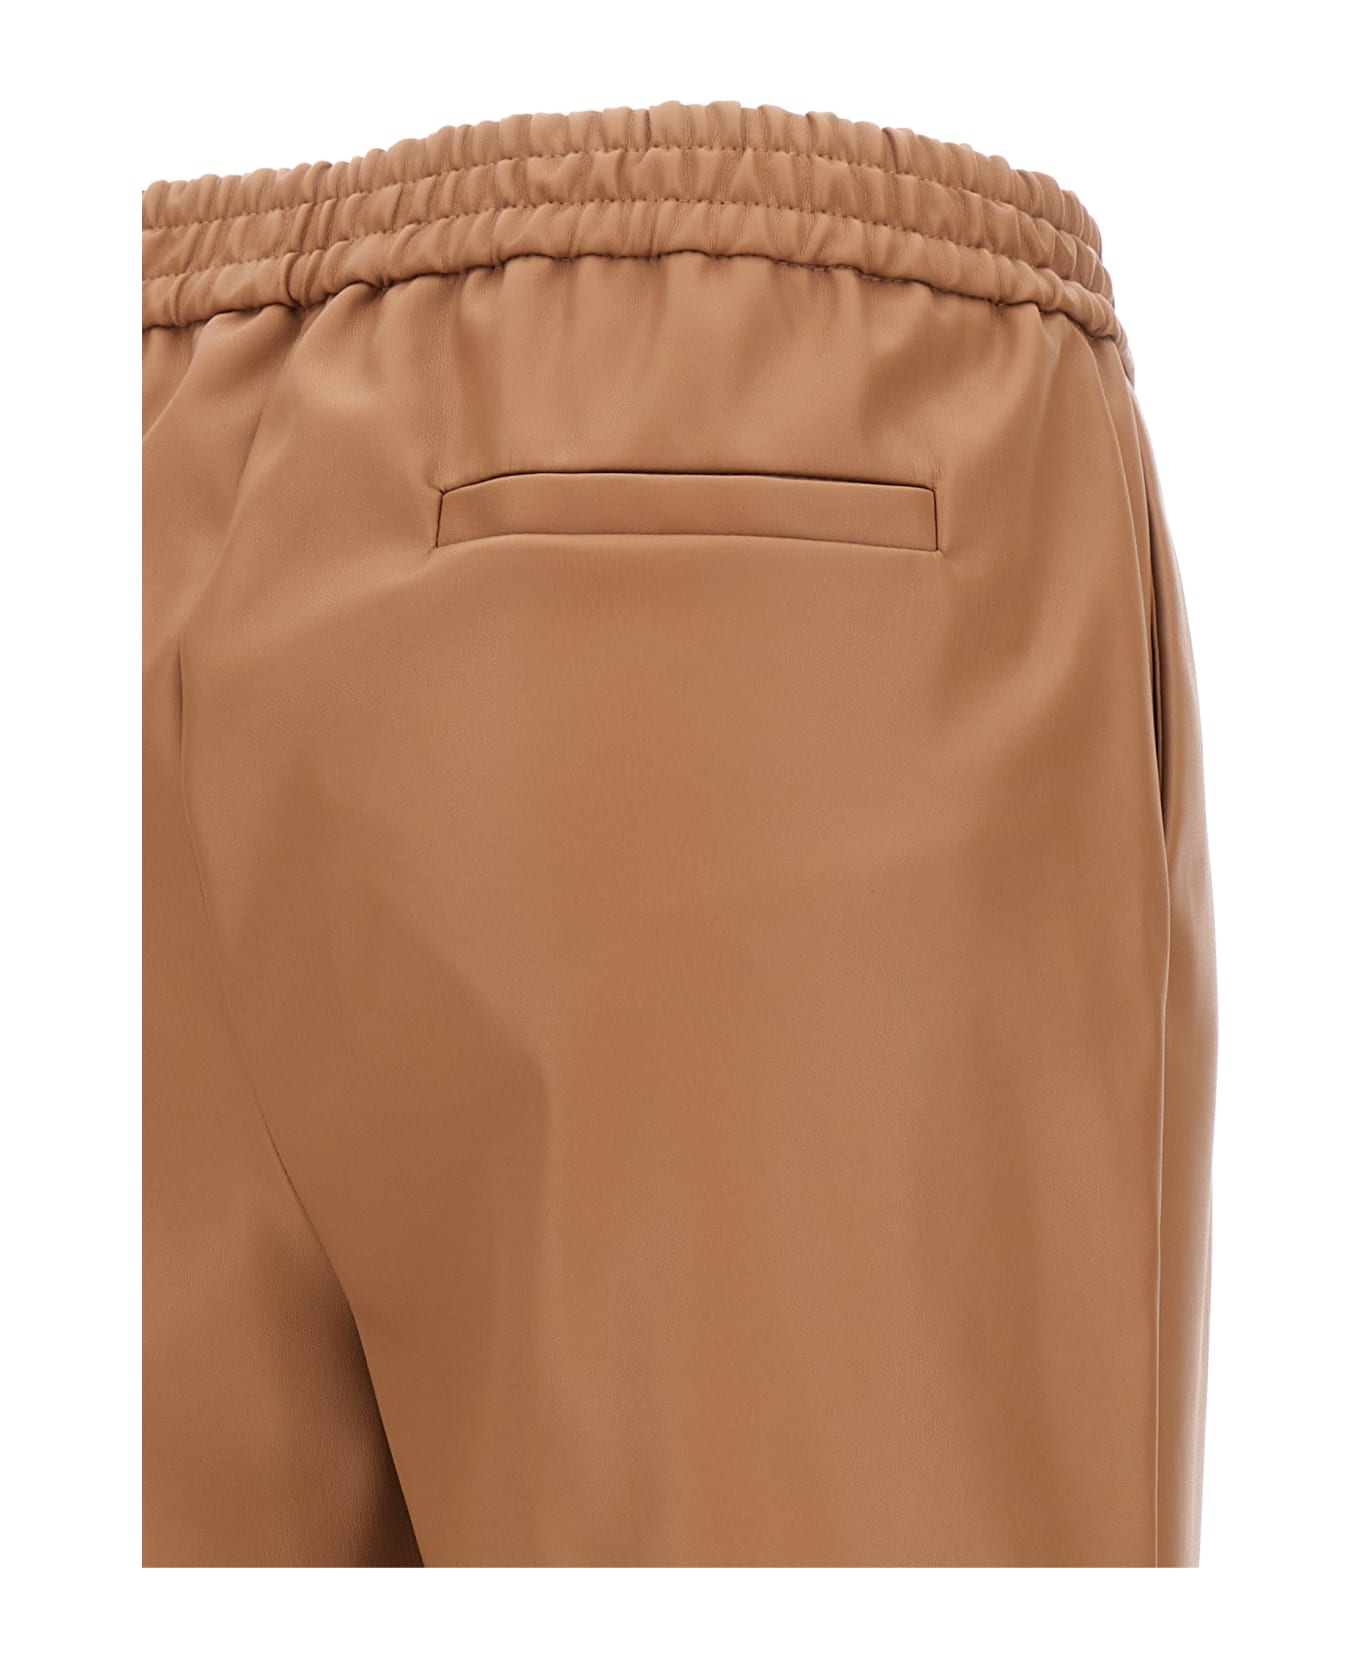 (nude) Eco Leather Pants - Beige